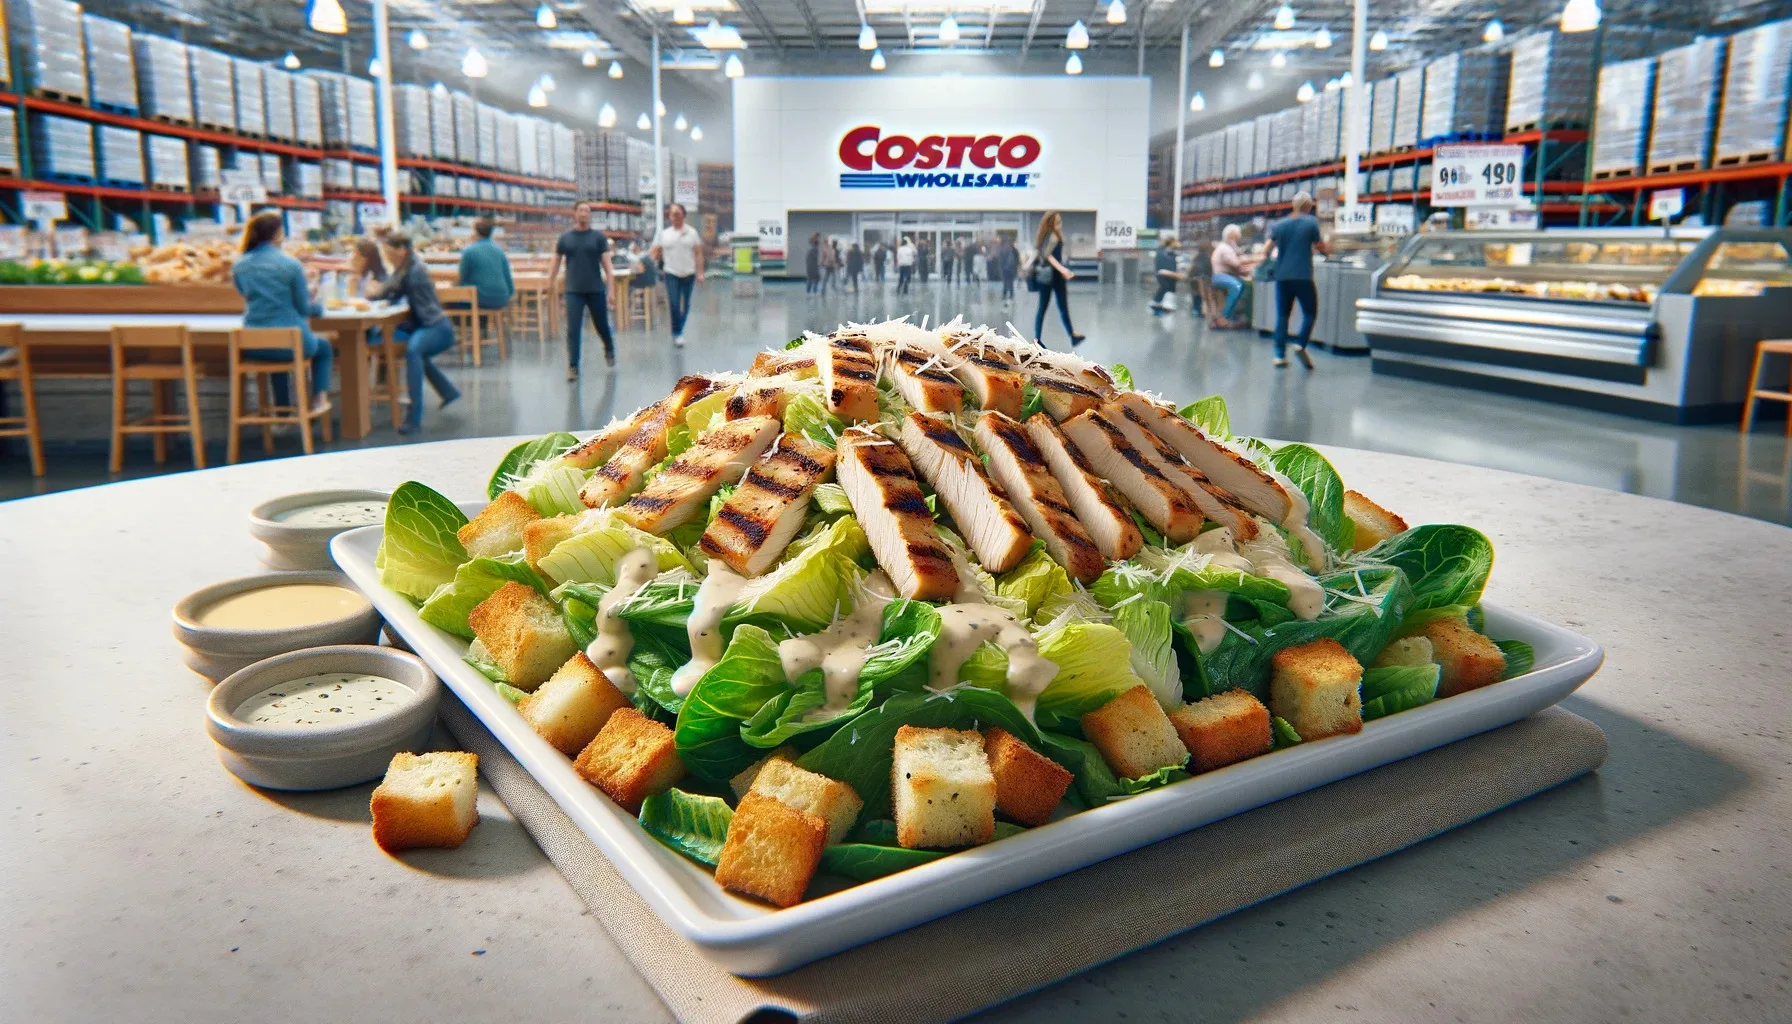 Costco Canada Food Court Menu Chicken Caesar Salad